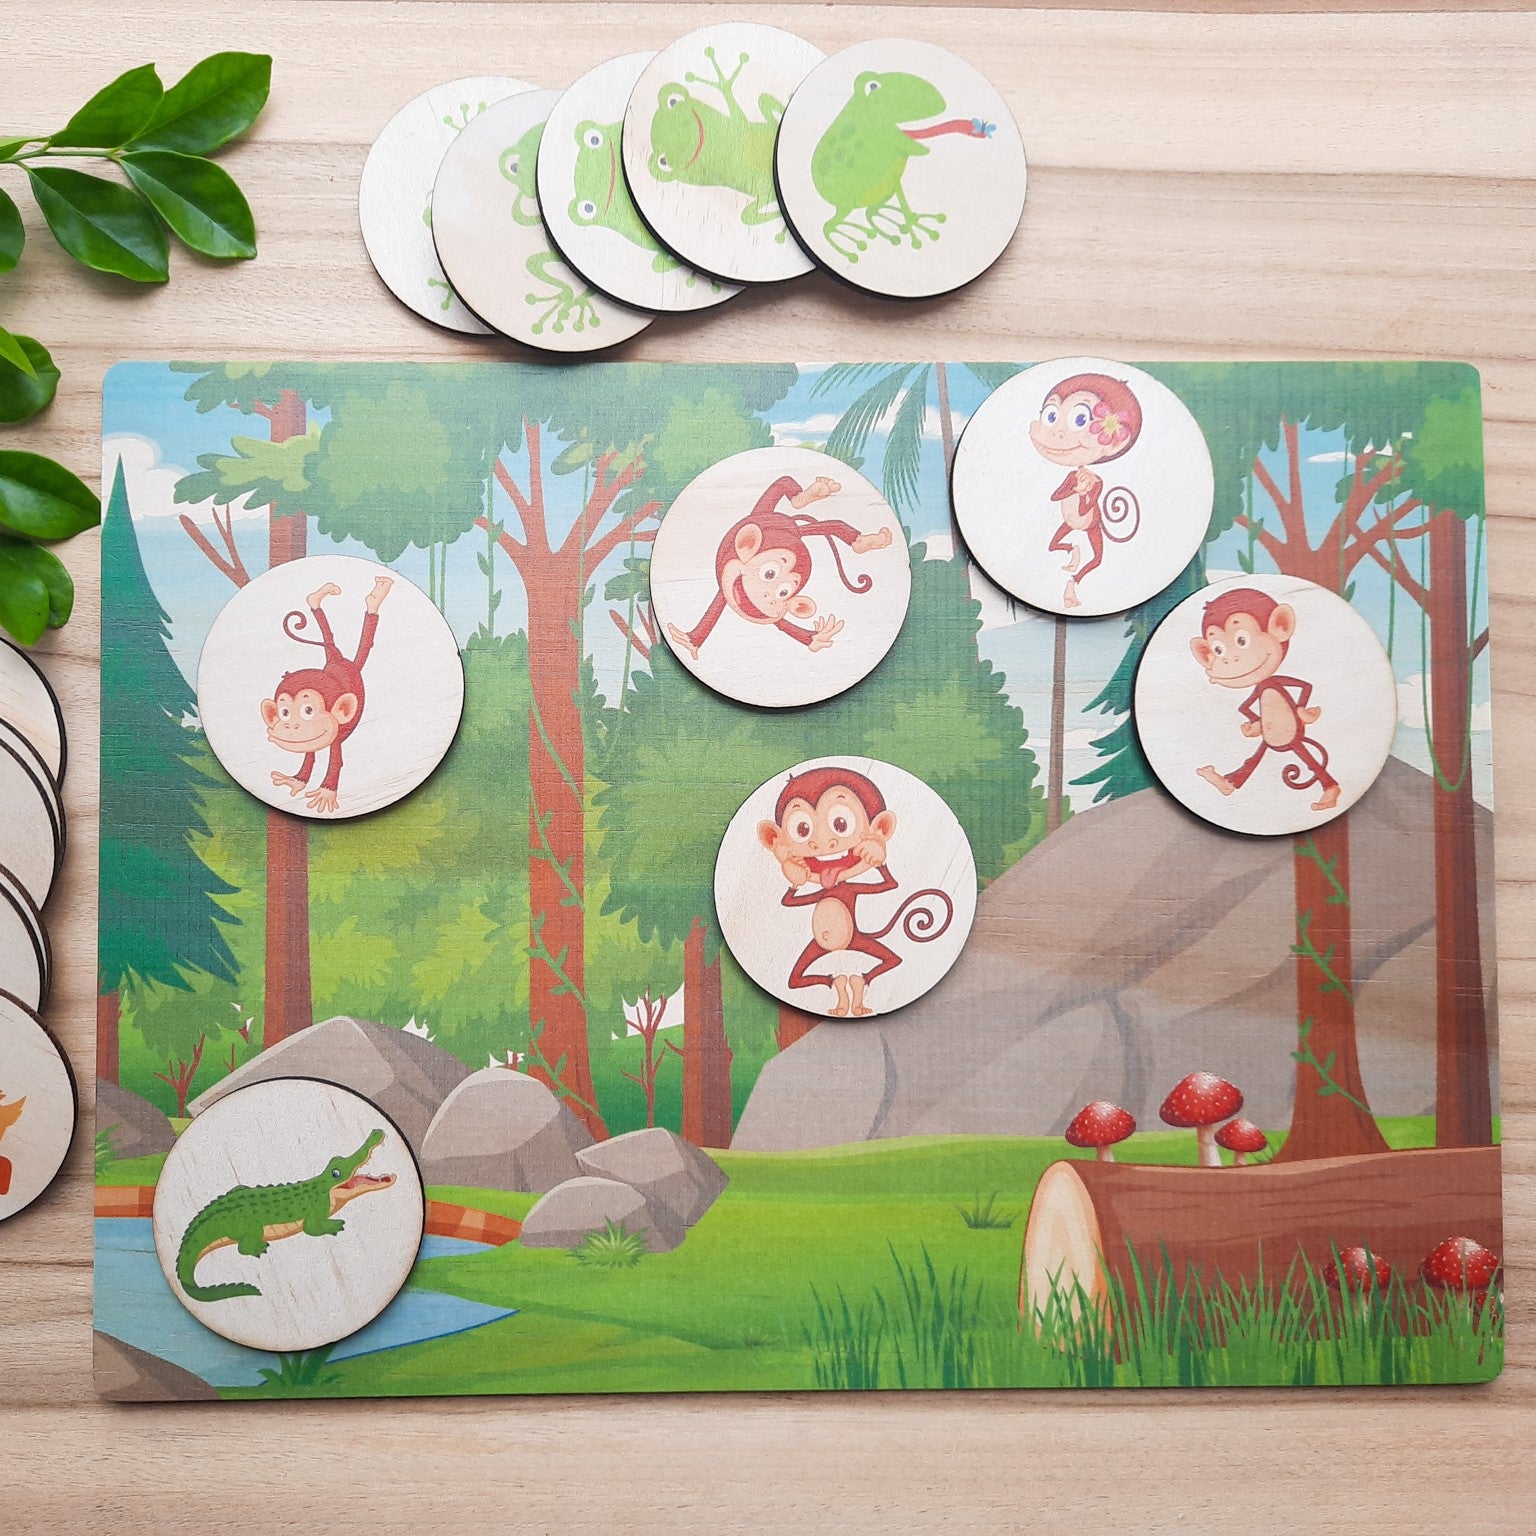 5 little ducks, speckled frogs & cheeky monkeys - story board & discs